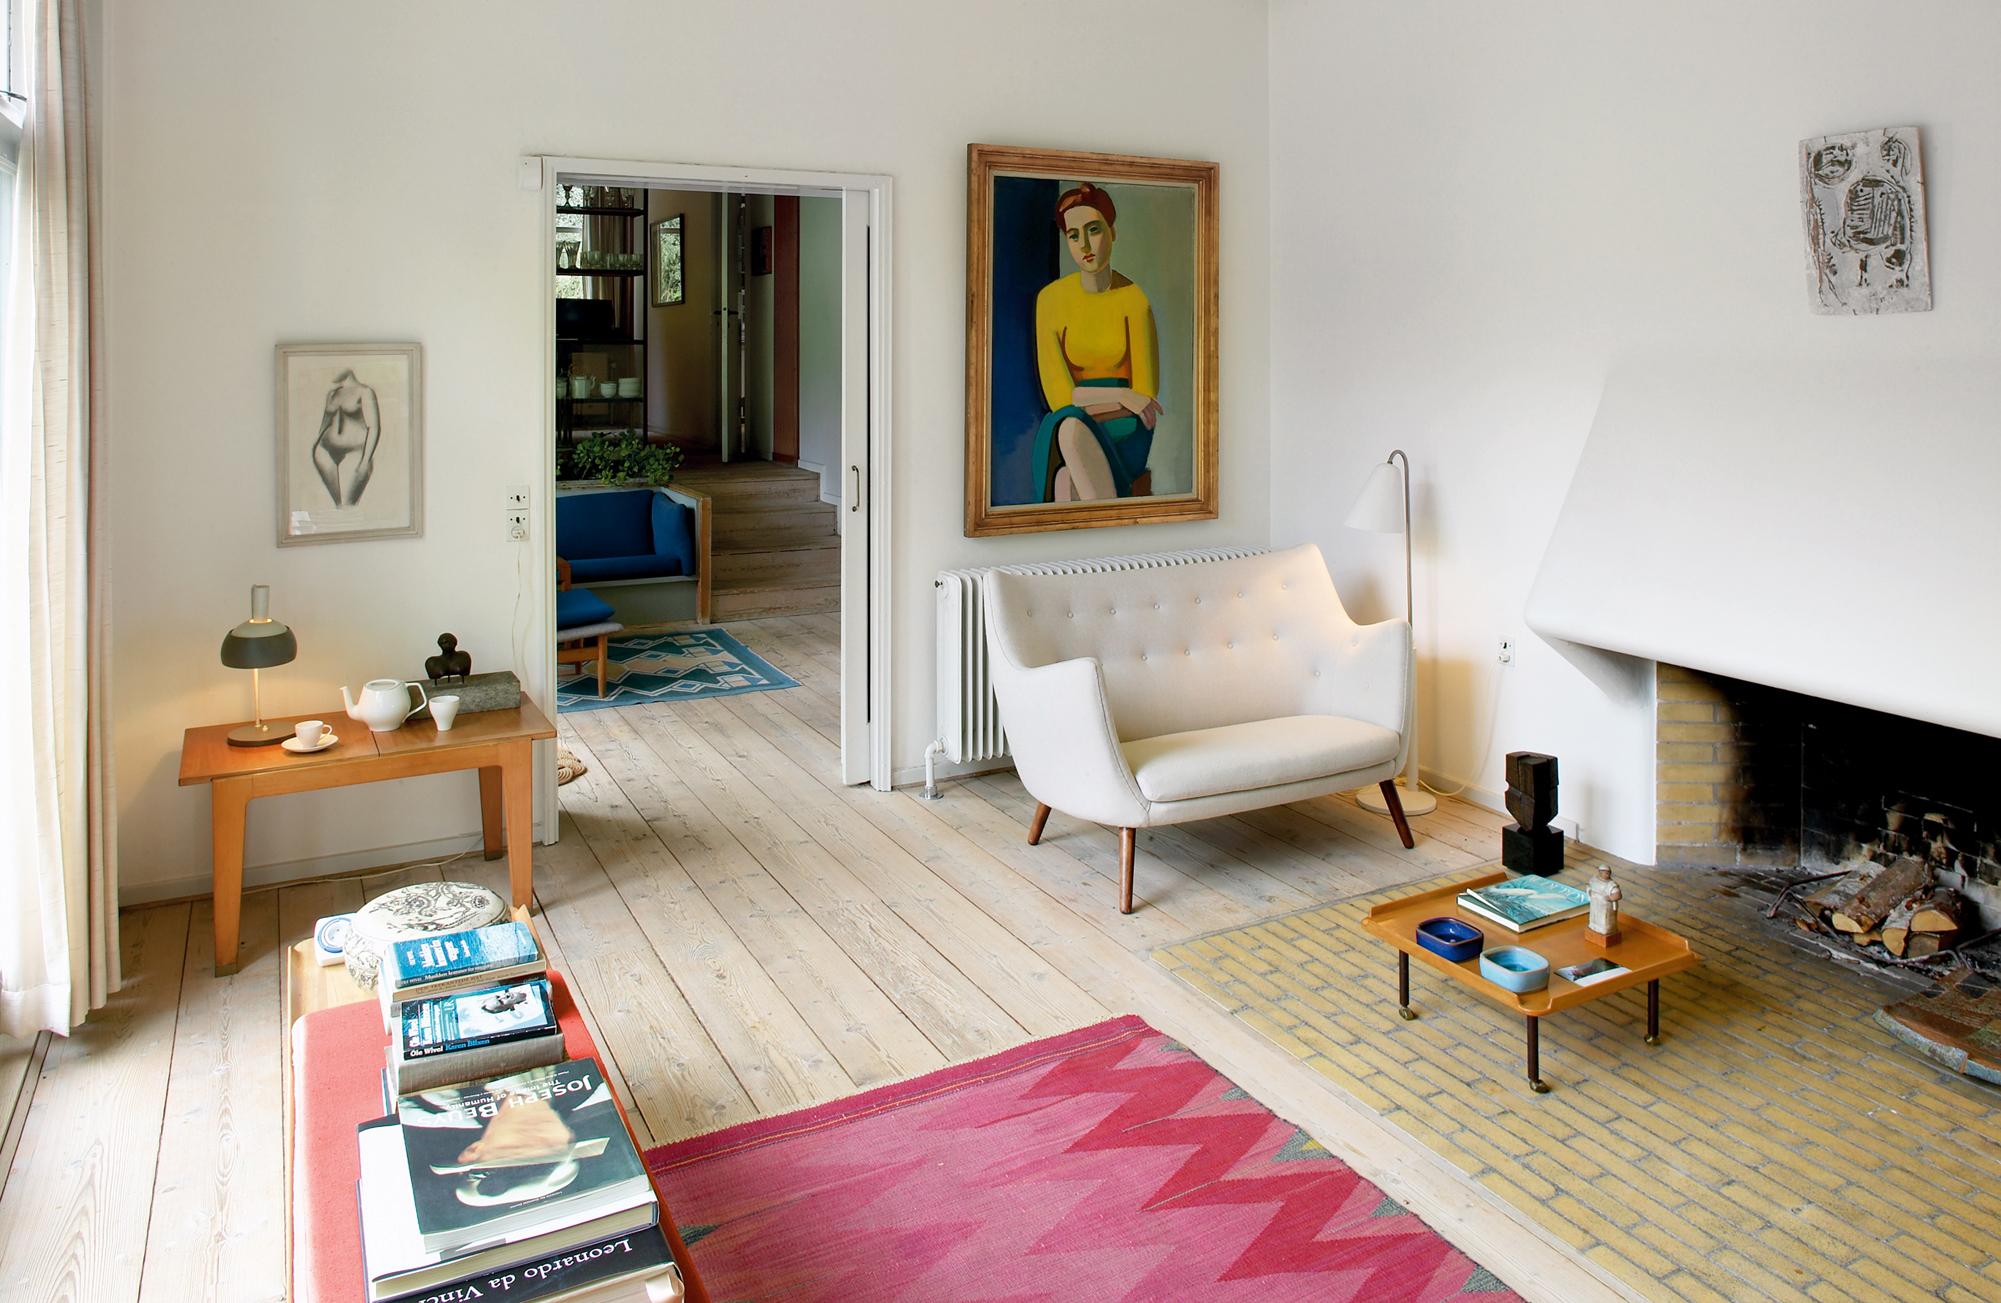 Helles Zimmer mit rotem Teppich #eklektisch #kamin #wohnzimmer #tisch ©Onecollection / Finn Juhl